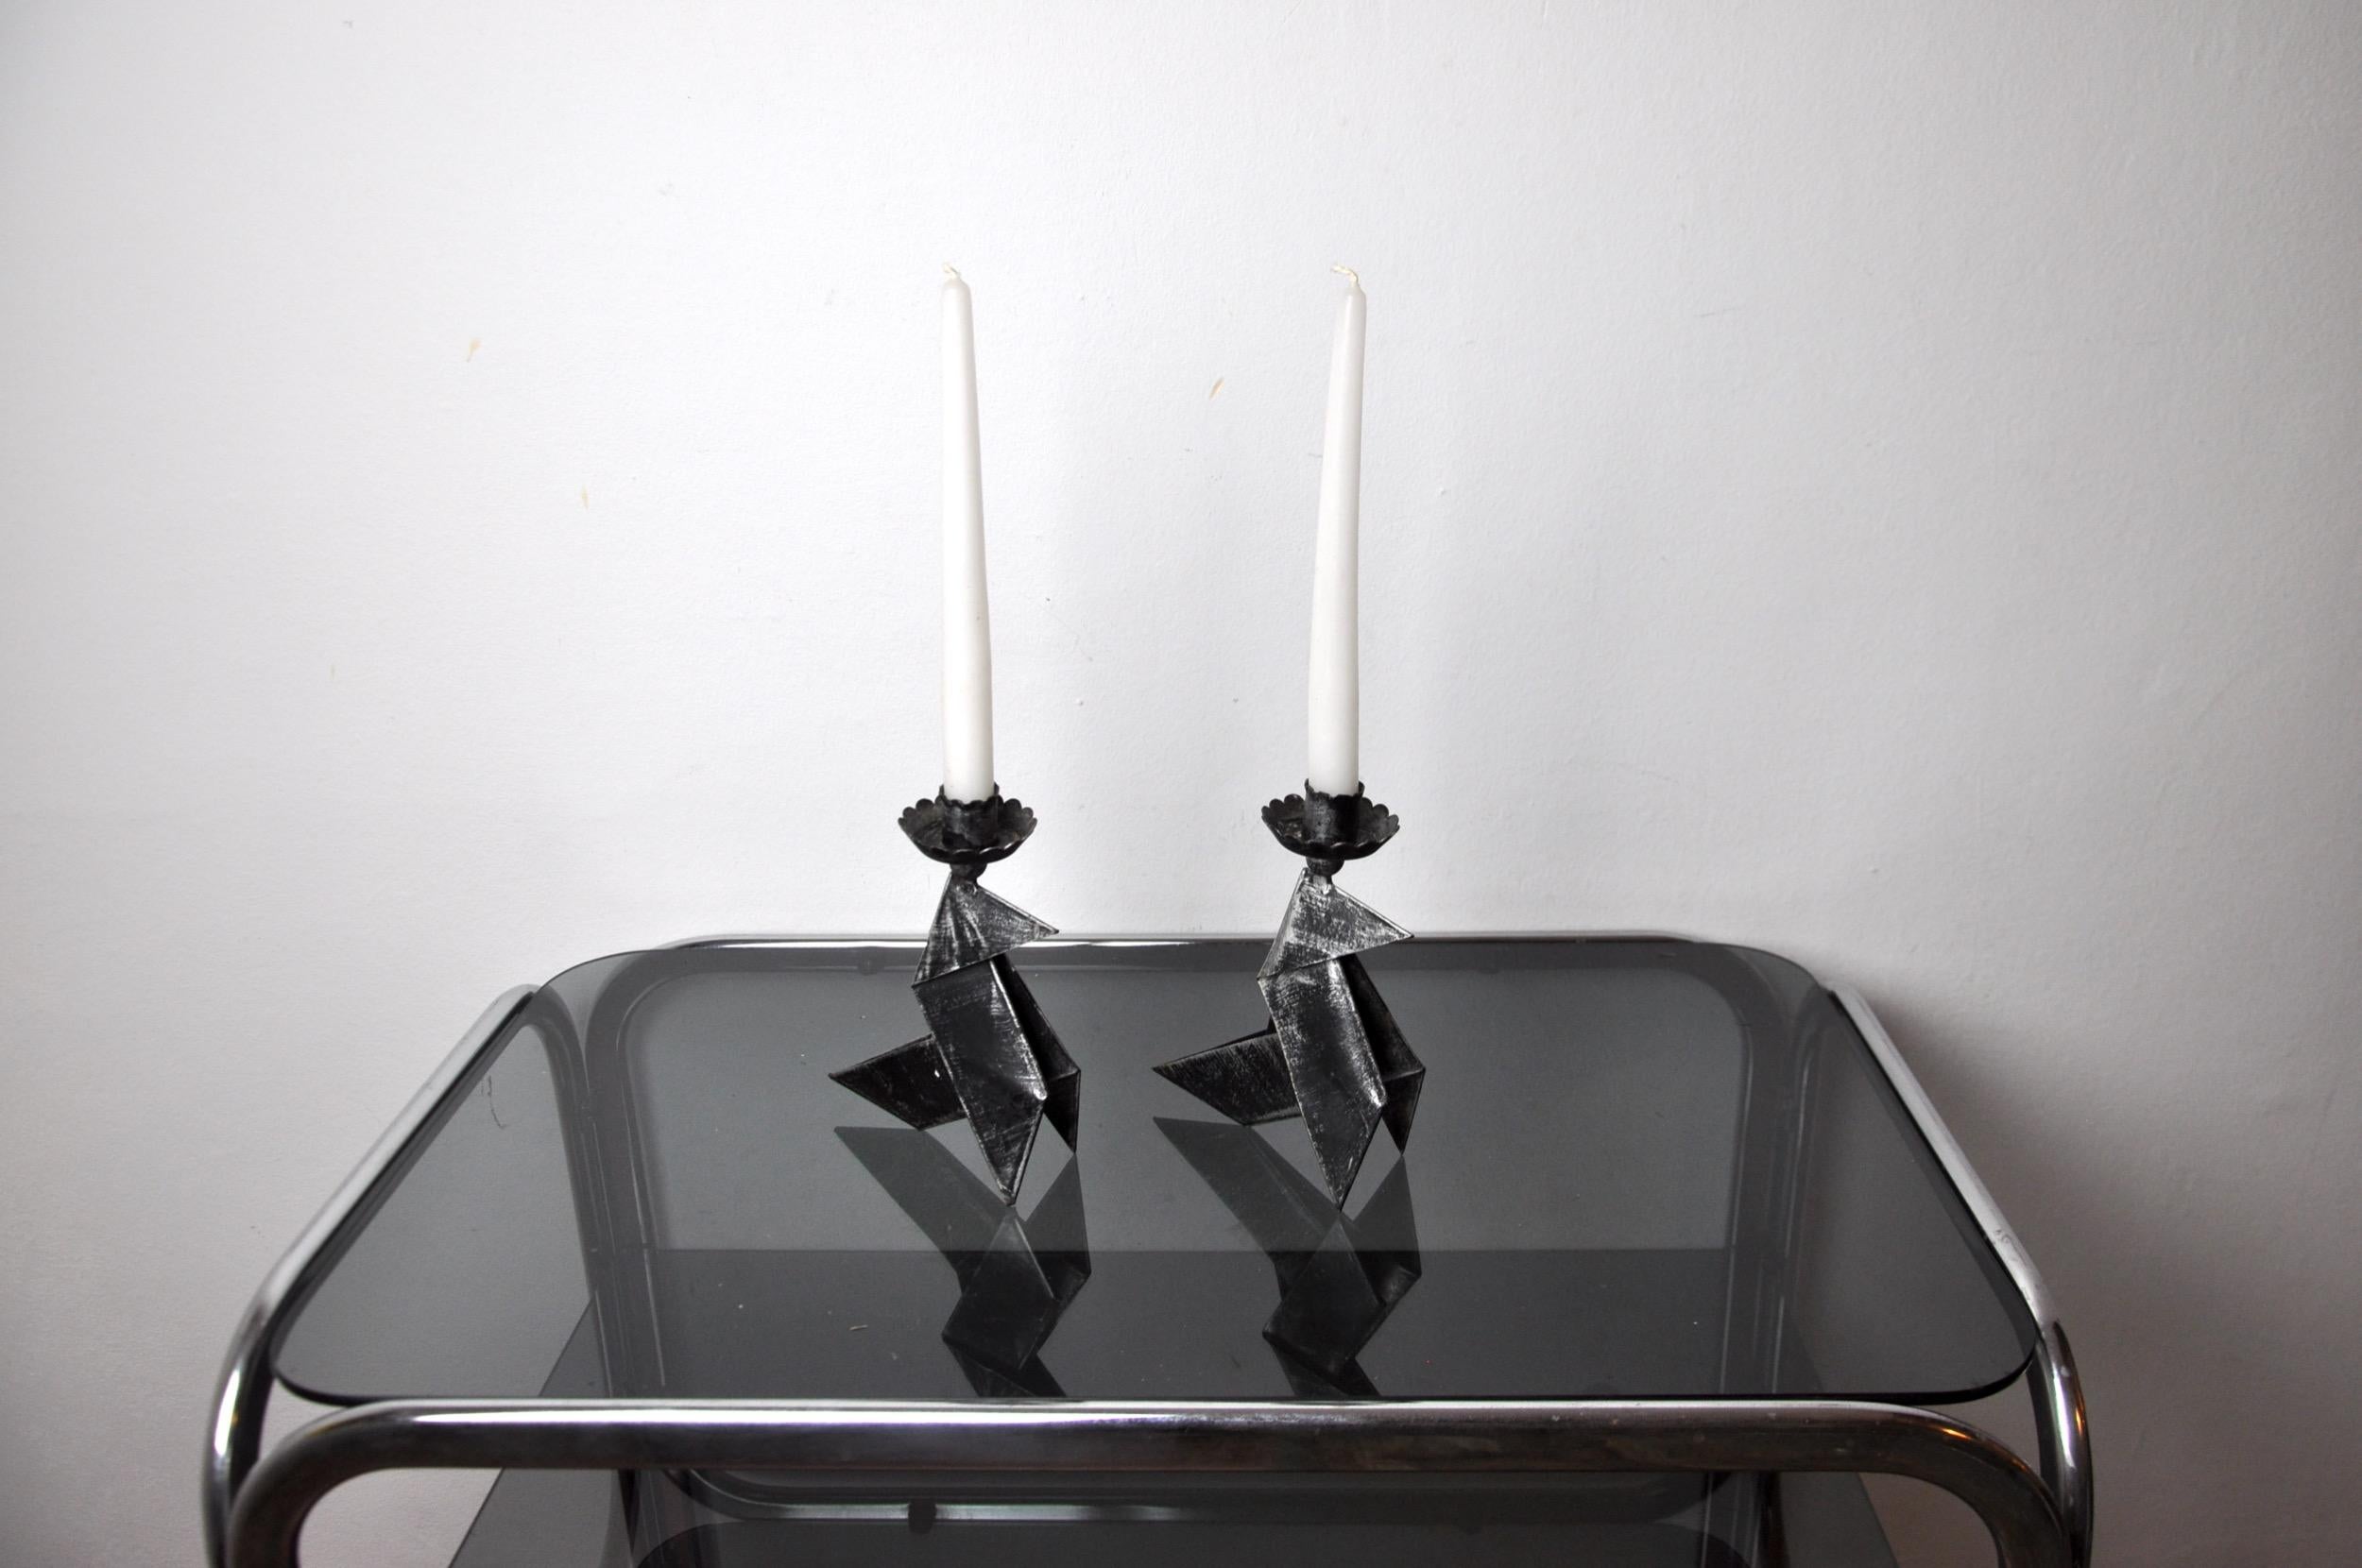 Sehr schönes Paar schmiedeeiserner Kerzenständer, die zwei Vögel darstellen, entworfen und hergestellt in Dänemark in den 1970er Jahren. Struktur aus schwarzem Schmiedeeisen. Hervorragende Design-Objekte, die als Volkskunst bezeichnet werden und Ihr